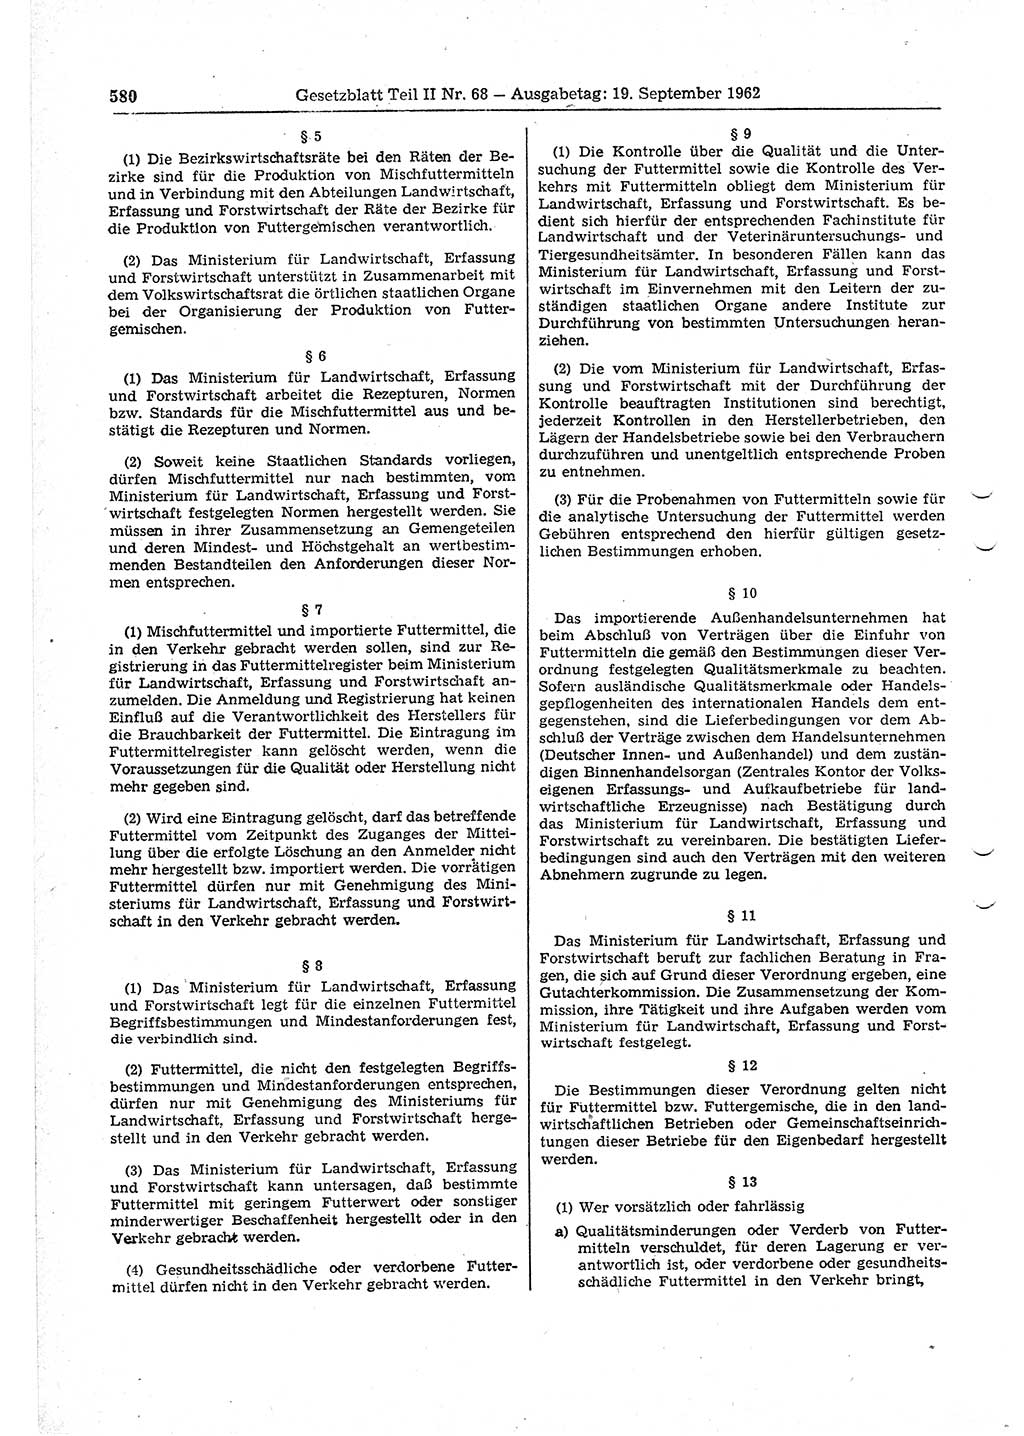 Gesetzblatt (GBl.) der Deutschen Demokratischen Republik (DDR) Teil ⅠⅠ 1962, Seite 580 (GBl. DDR ⅠⅠ 1962, S. 580)